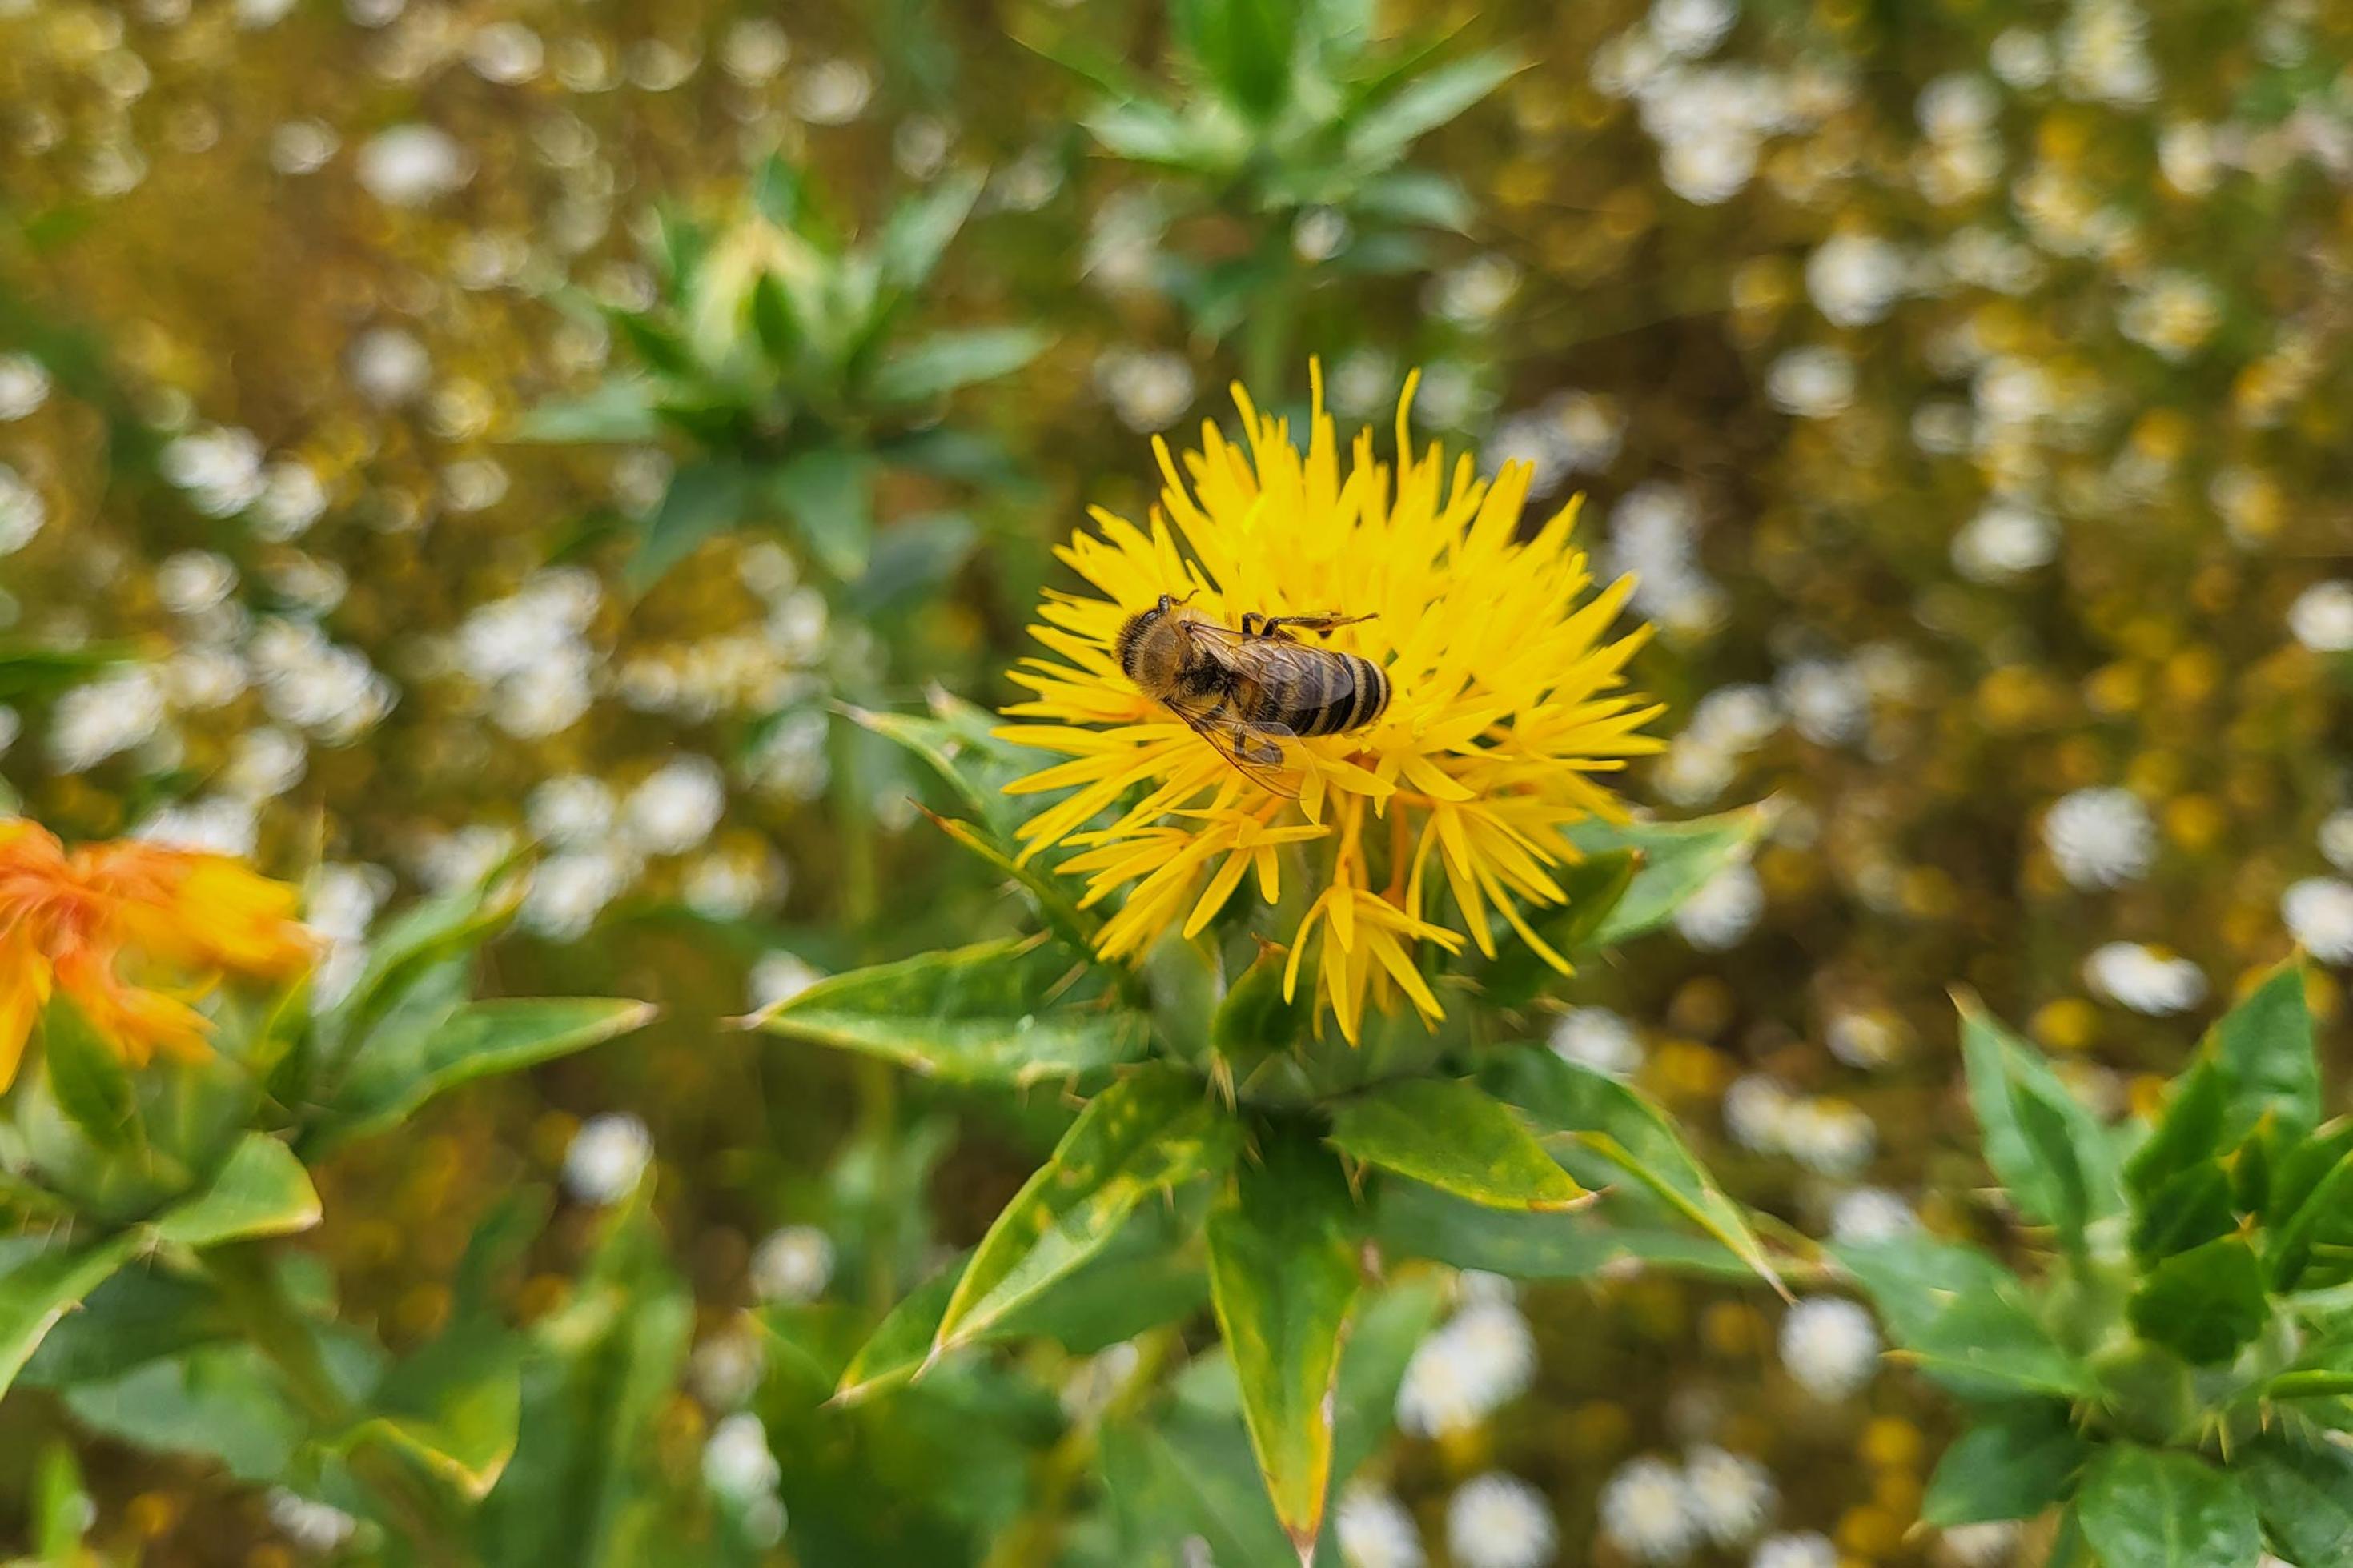 Gelb blühende Blume, auf deren Blüte eine Biene sitzt